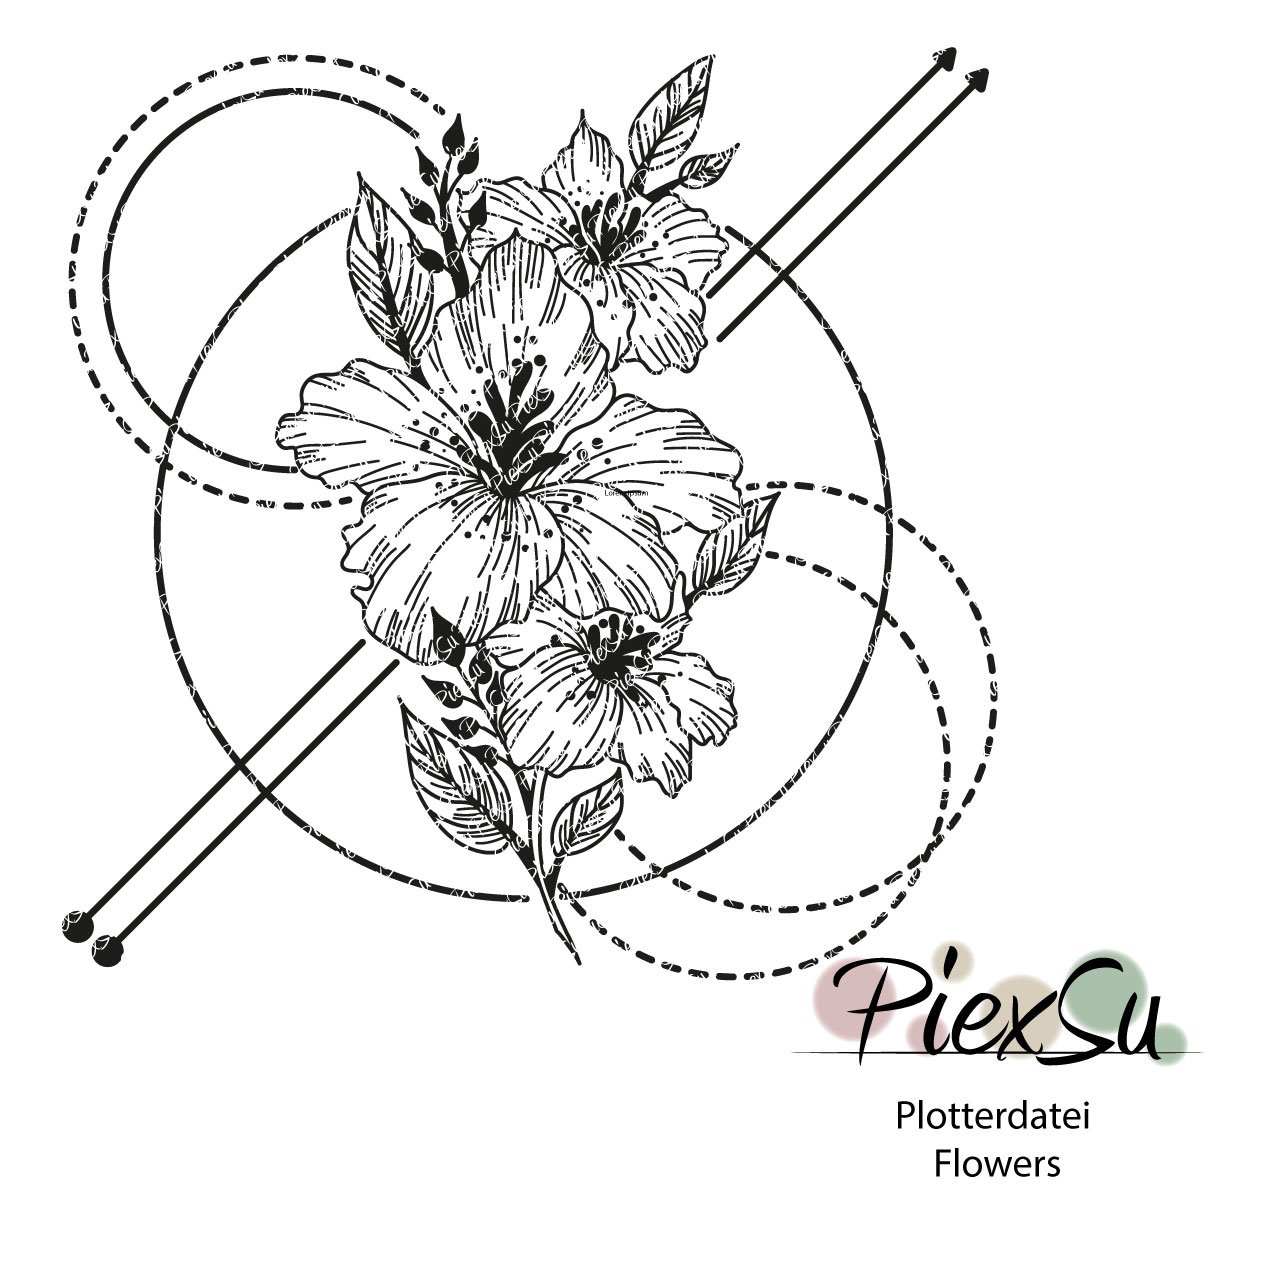 PiexSu-Plotterdatei-Flowers-plotten-dxf-svg-Titelbild